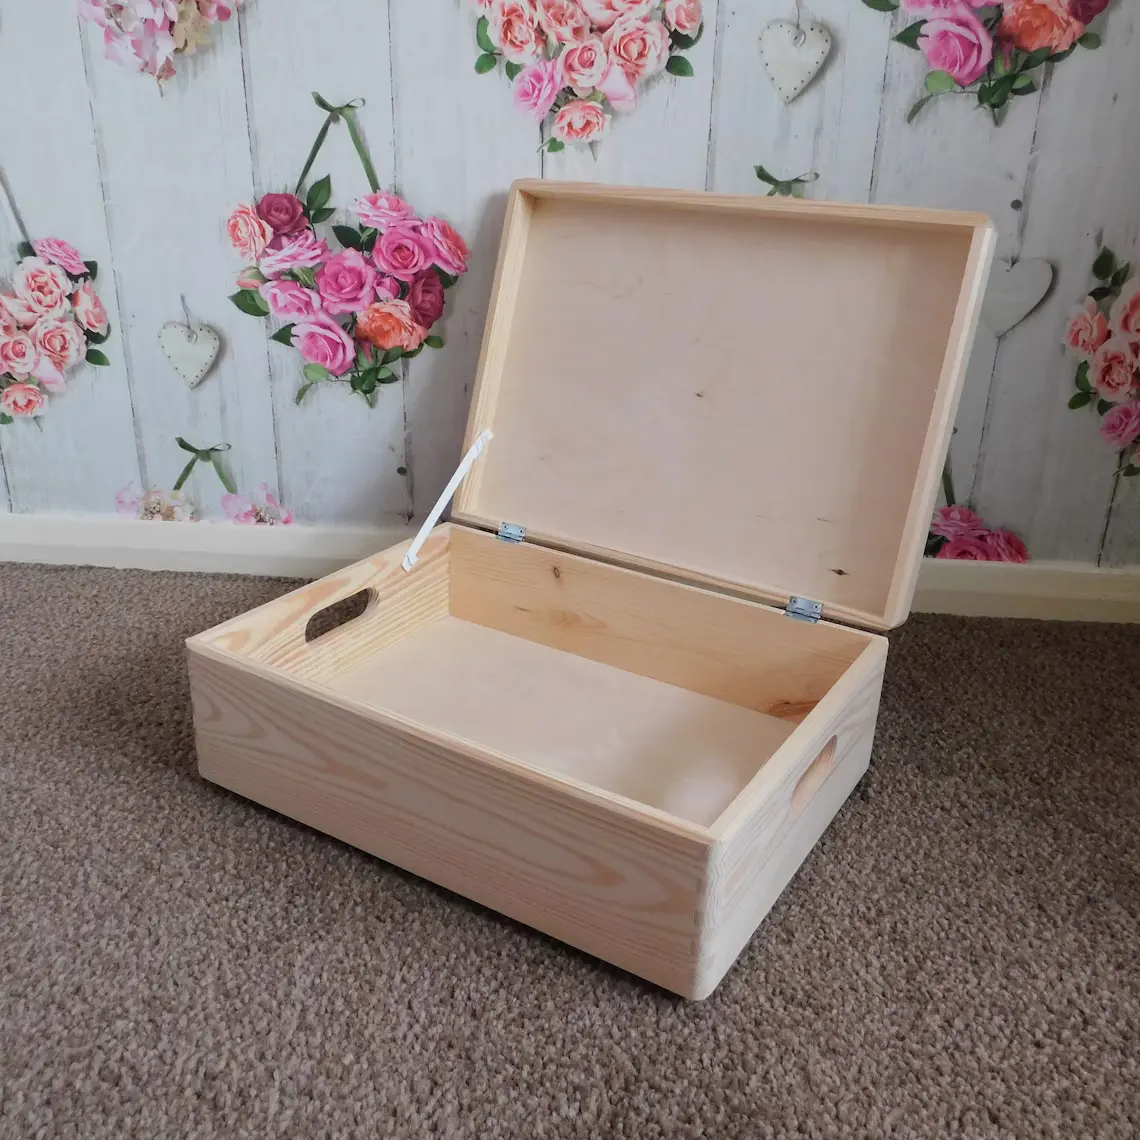 Natural Unpainted Wooden Box With Lid - L40cm x W30cm x H14cm - Inside